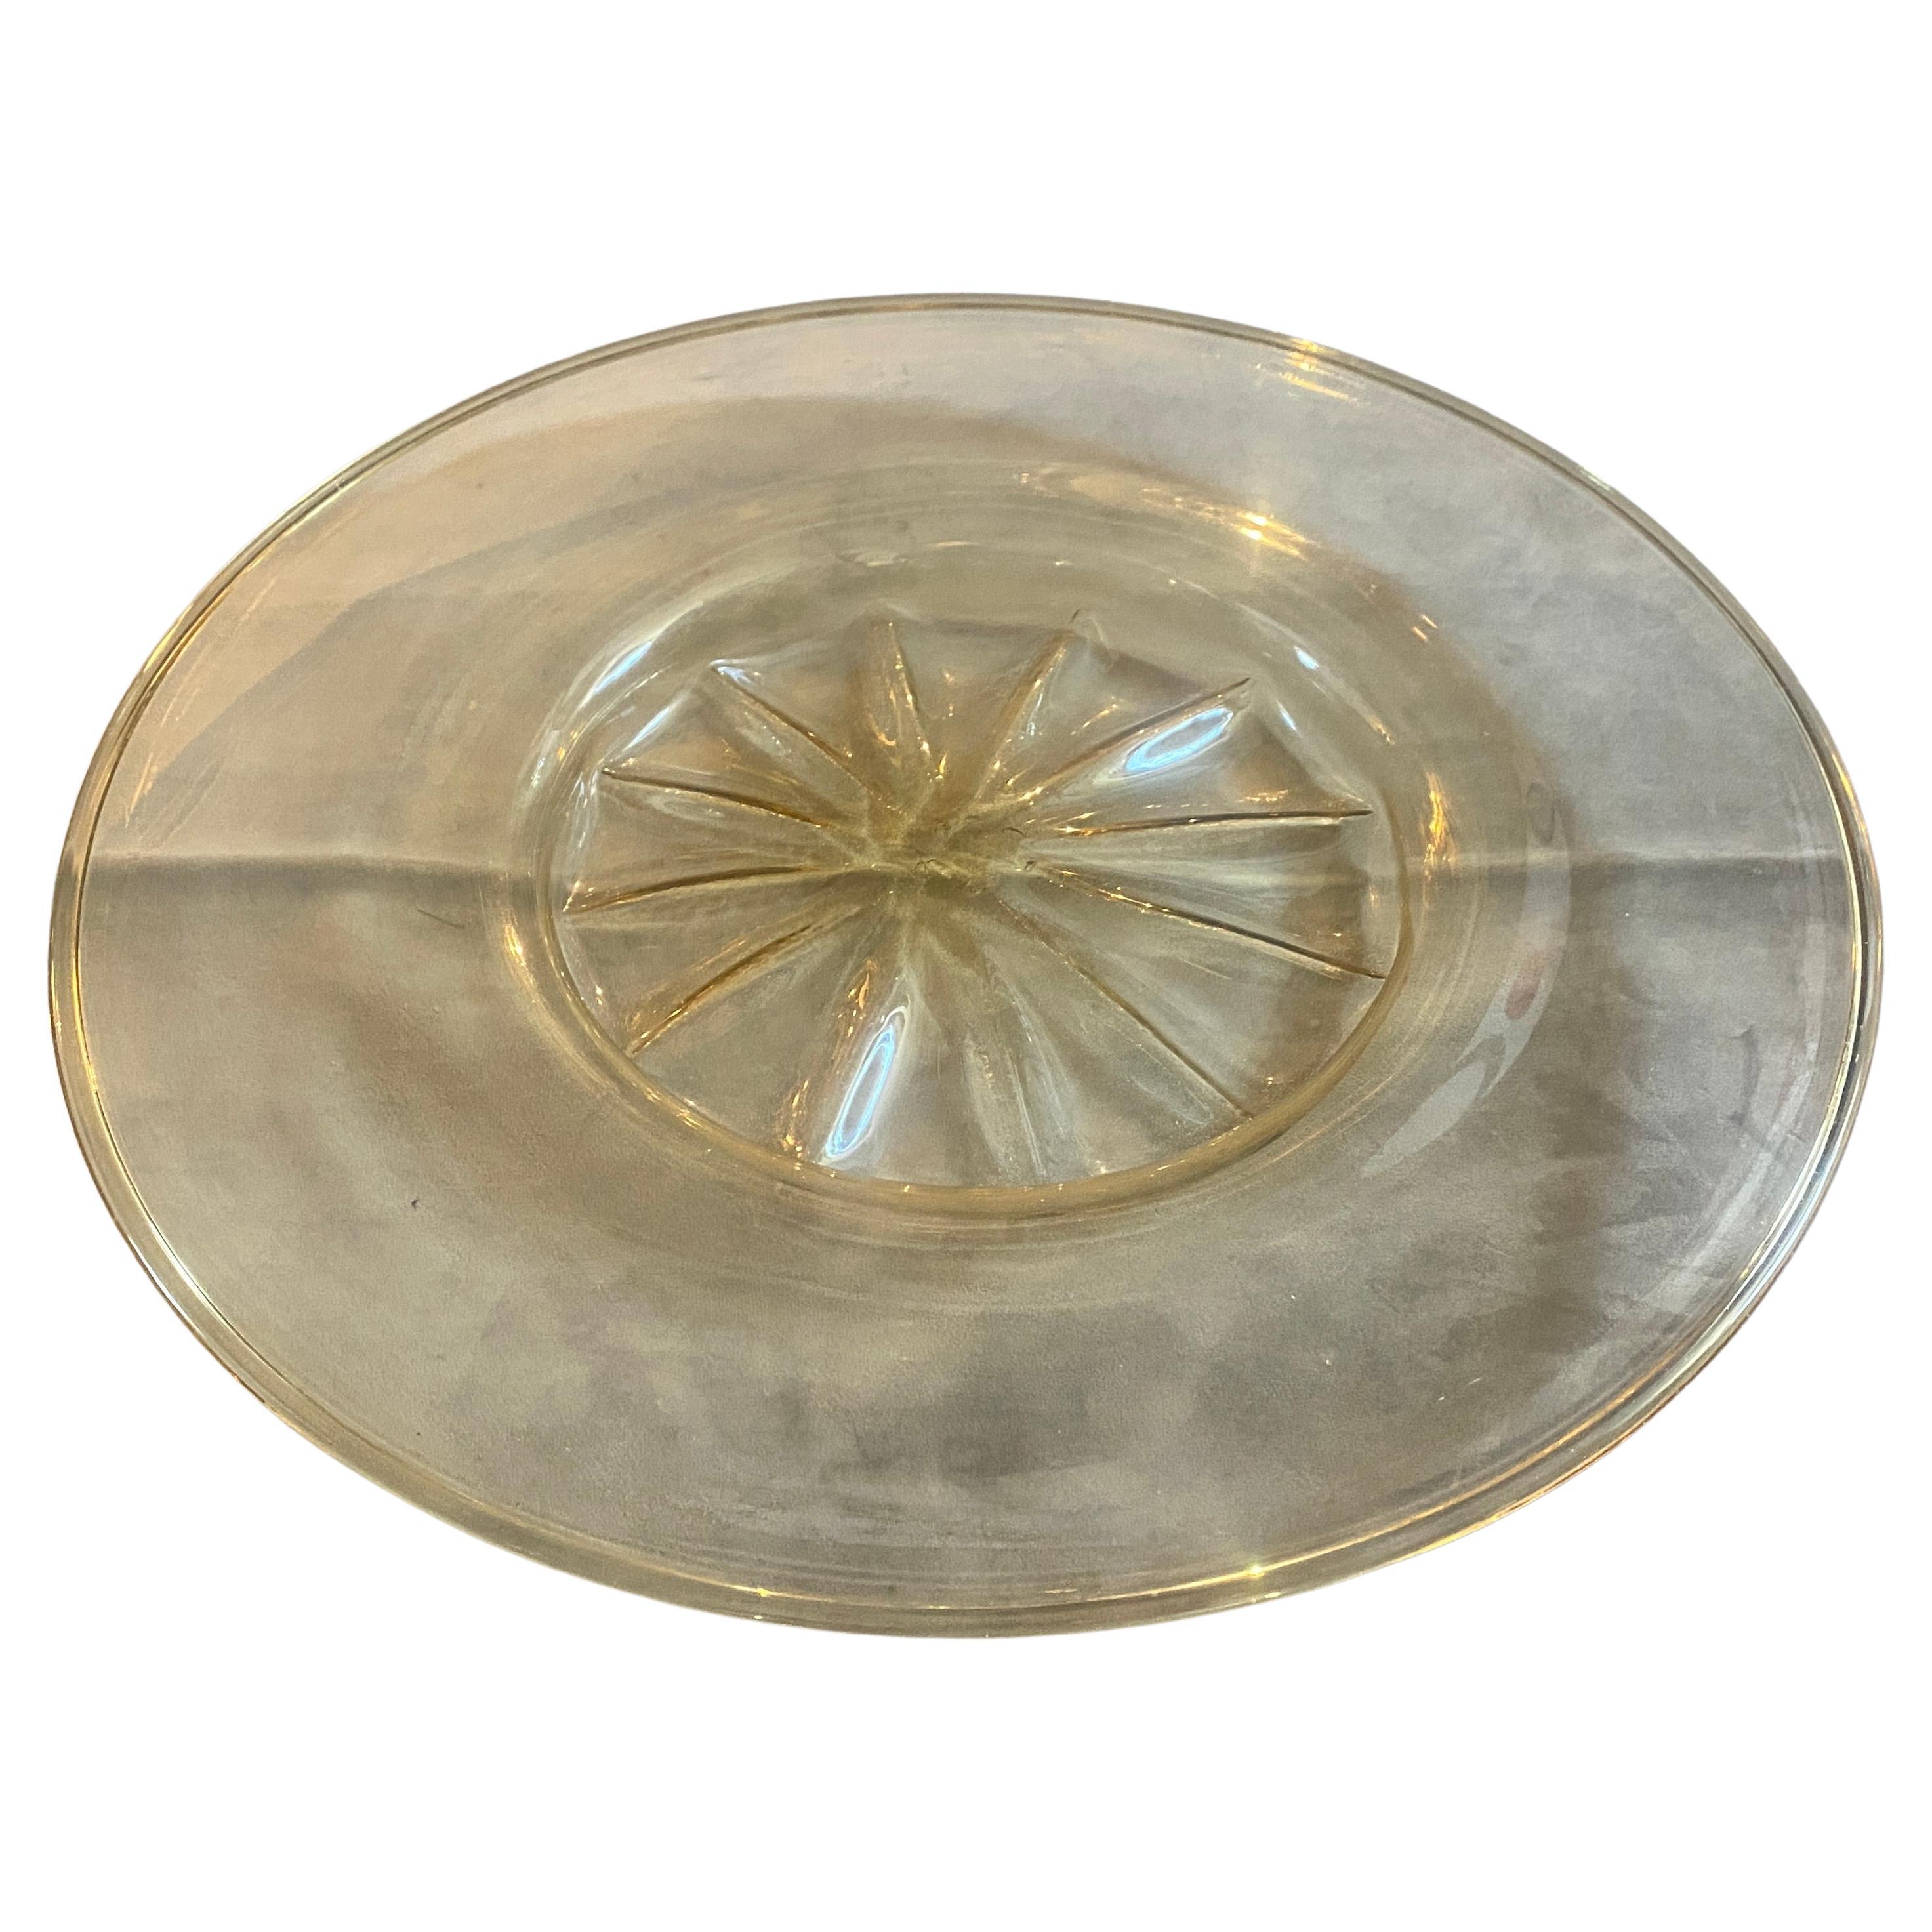 Großer Teller aus mundgeblasenem Murano-Glas in Gold und Transparenz, entworfen in Venedig von Vittorio Zecchin für Venini in den dreißiger Jahren. Es ist in perfektem Zustand. Dieser Teller, der in den 1930er Jahren von dem geschätzten Glaskünstler